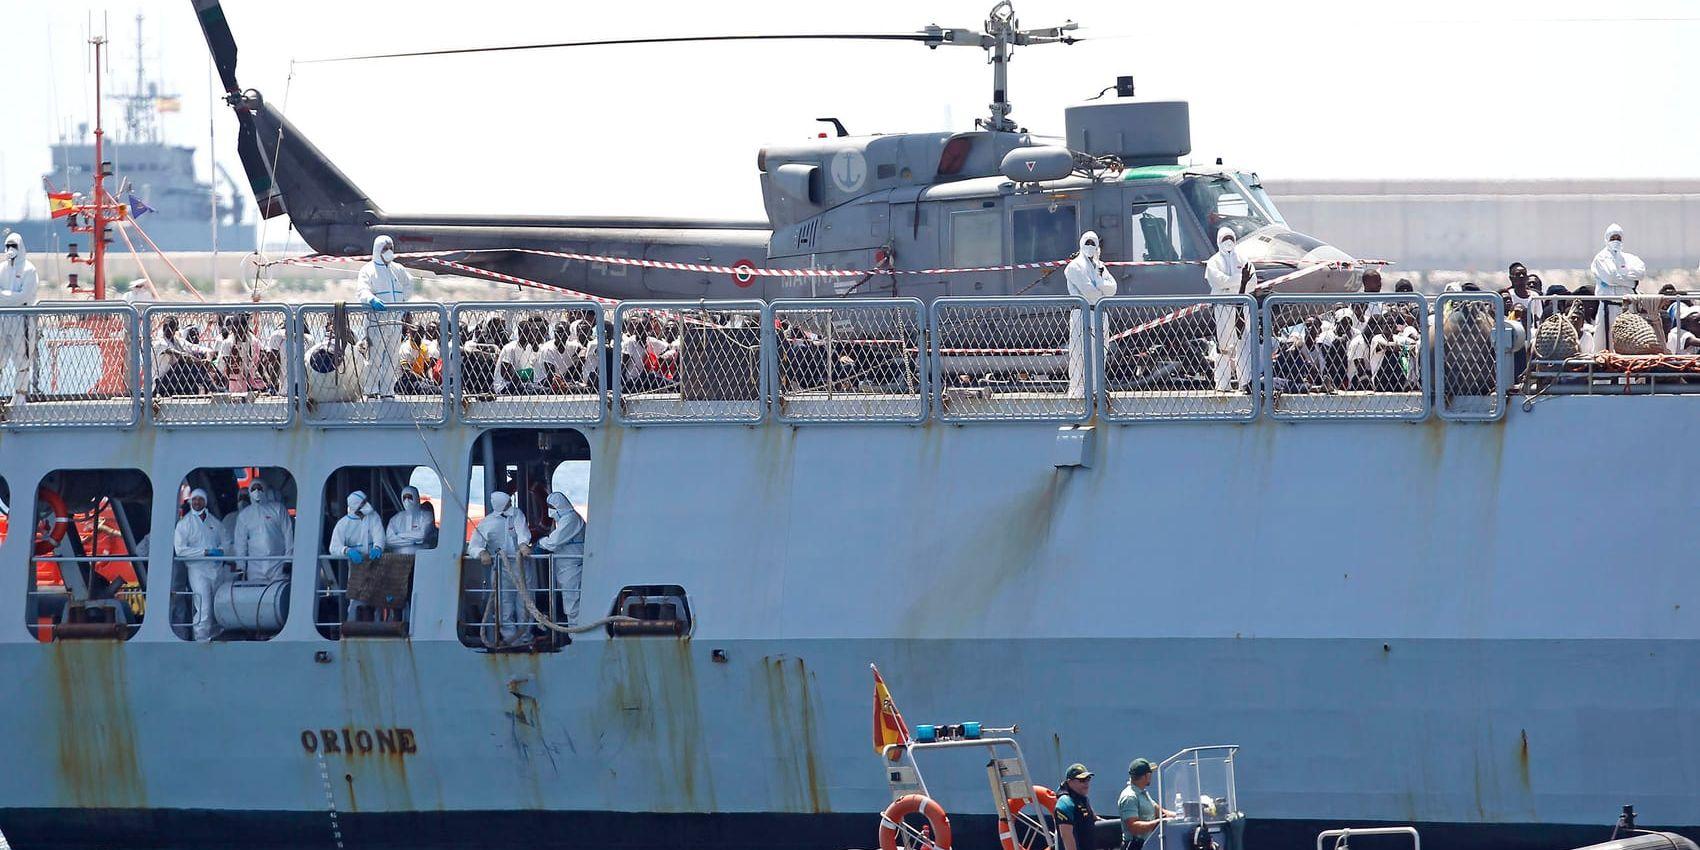 Räddningsfartyget Aquarius, med över 600 migranter ombord som räddats ur Medelhavet utanför Libyens kust, blev snabbt en symbol för EU-ländernas olika inställning i migrationspolitiken. Till slut fick fartyget gå in i en hamn i Valencia, Spanien. Bilden är från 17 juni 2018.